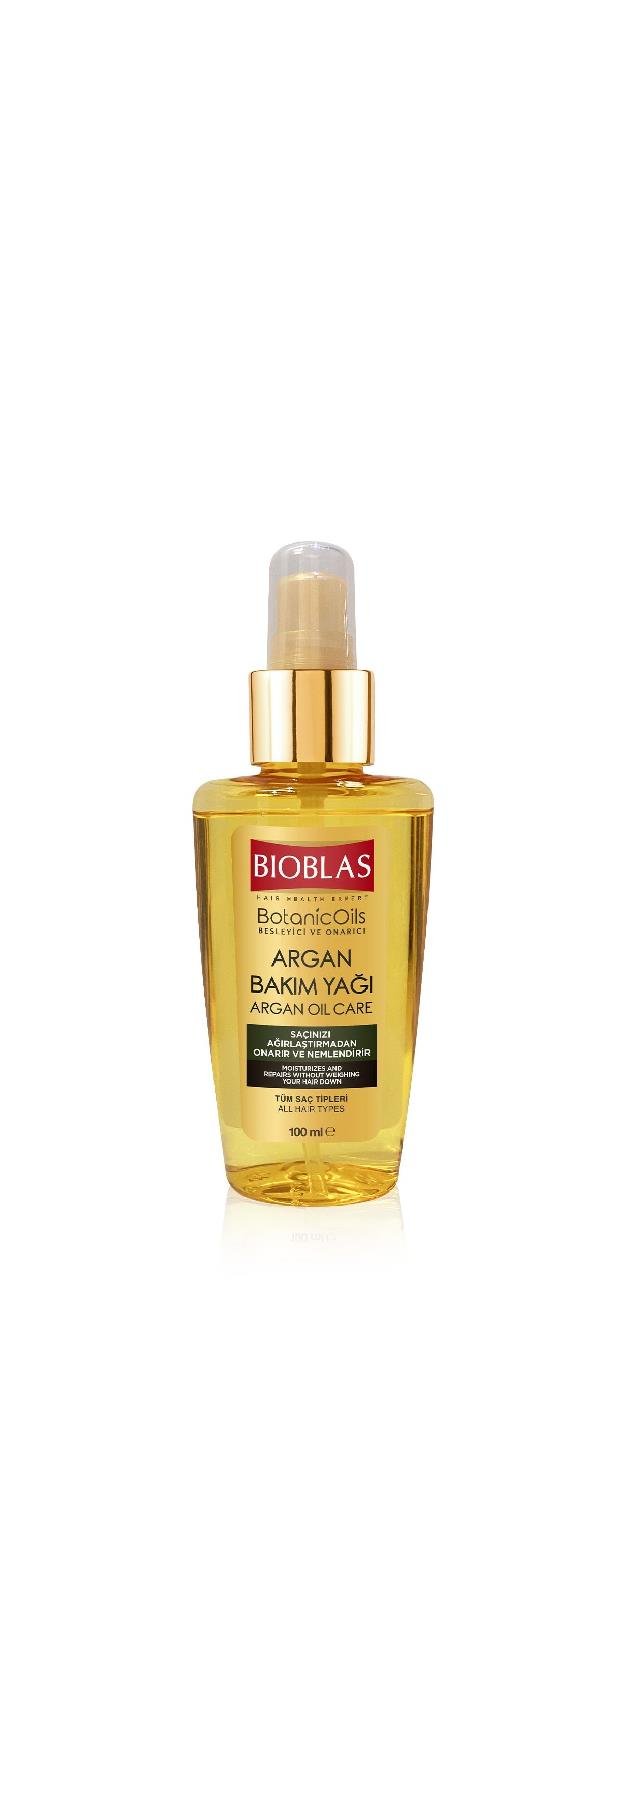 Bioblas Botanic Oils Argan Saç Bakım Yağı 100 ml | Şengör Meşrubat